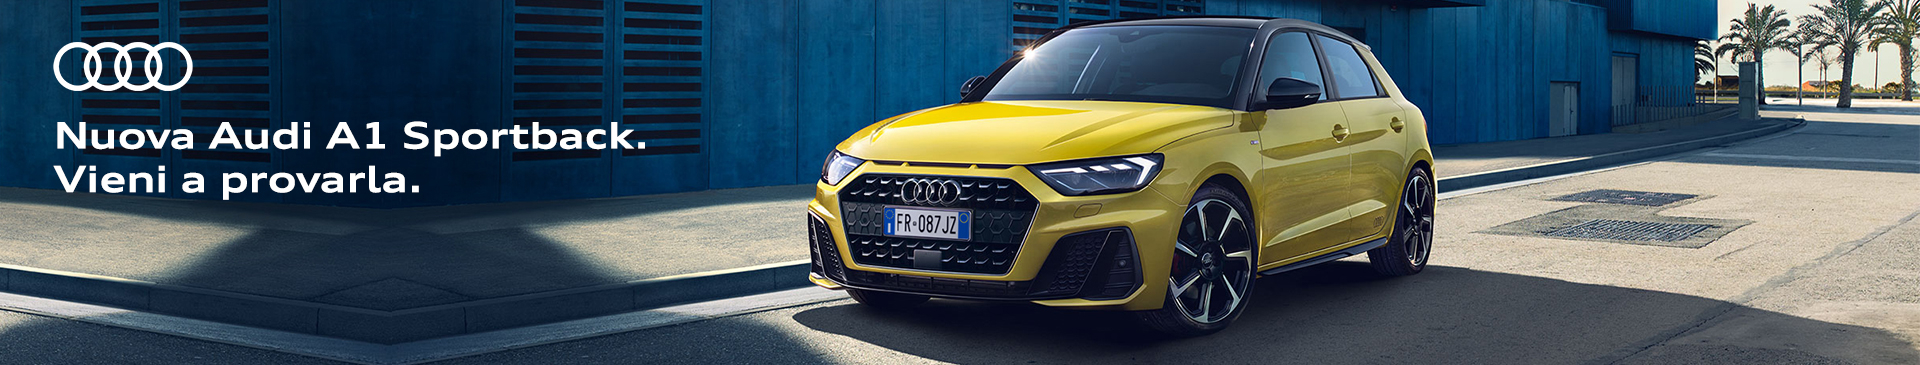 Audi: in agosto, vantaggi fino a -18% sulla pronta consegna